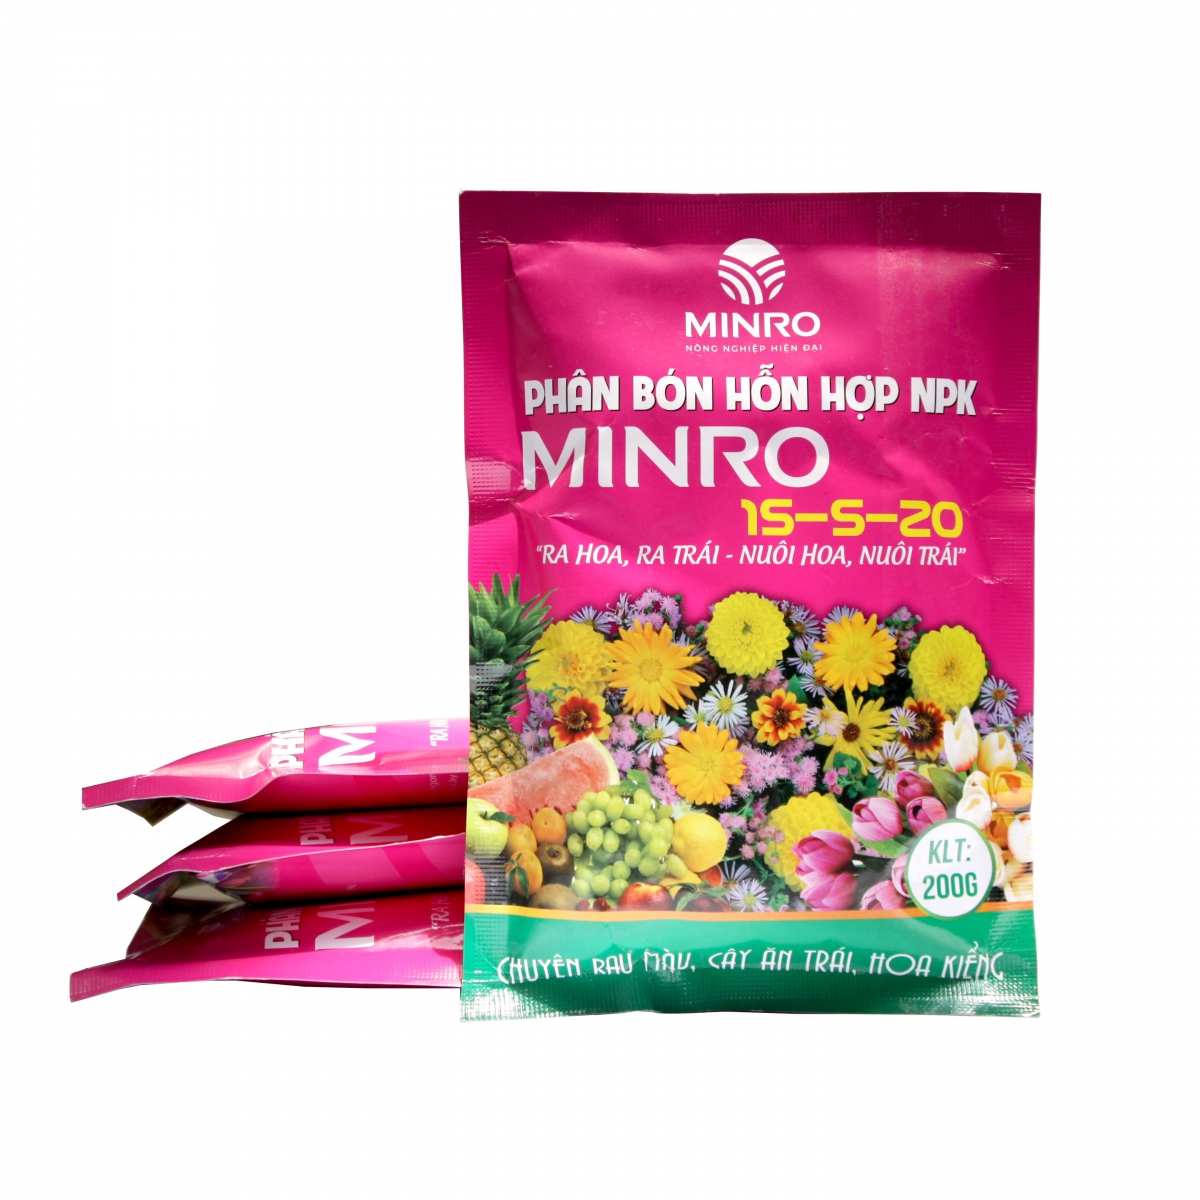 Phân bón hỗn hợp NPK Minro 15-5-20 (200gr – 1kg)